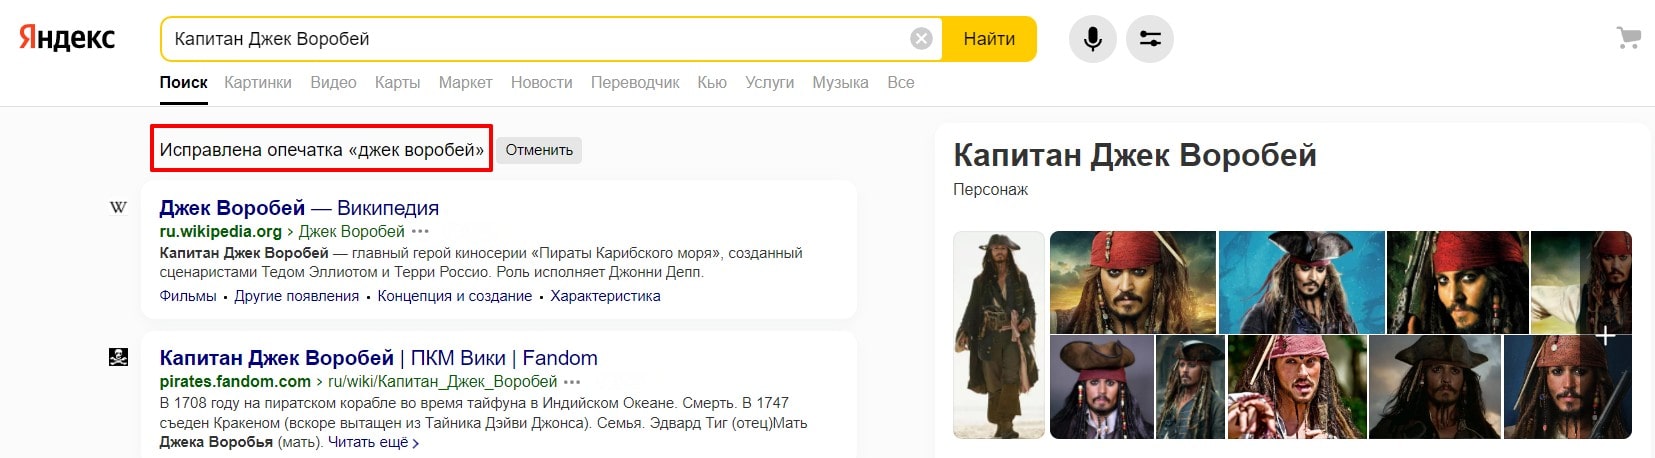 Яндекс исправляет Джека Воробья на капитана Джека Воробья